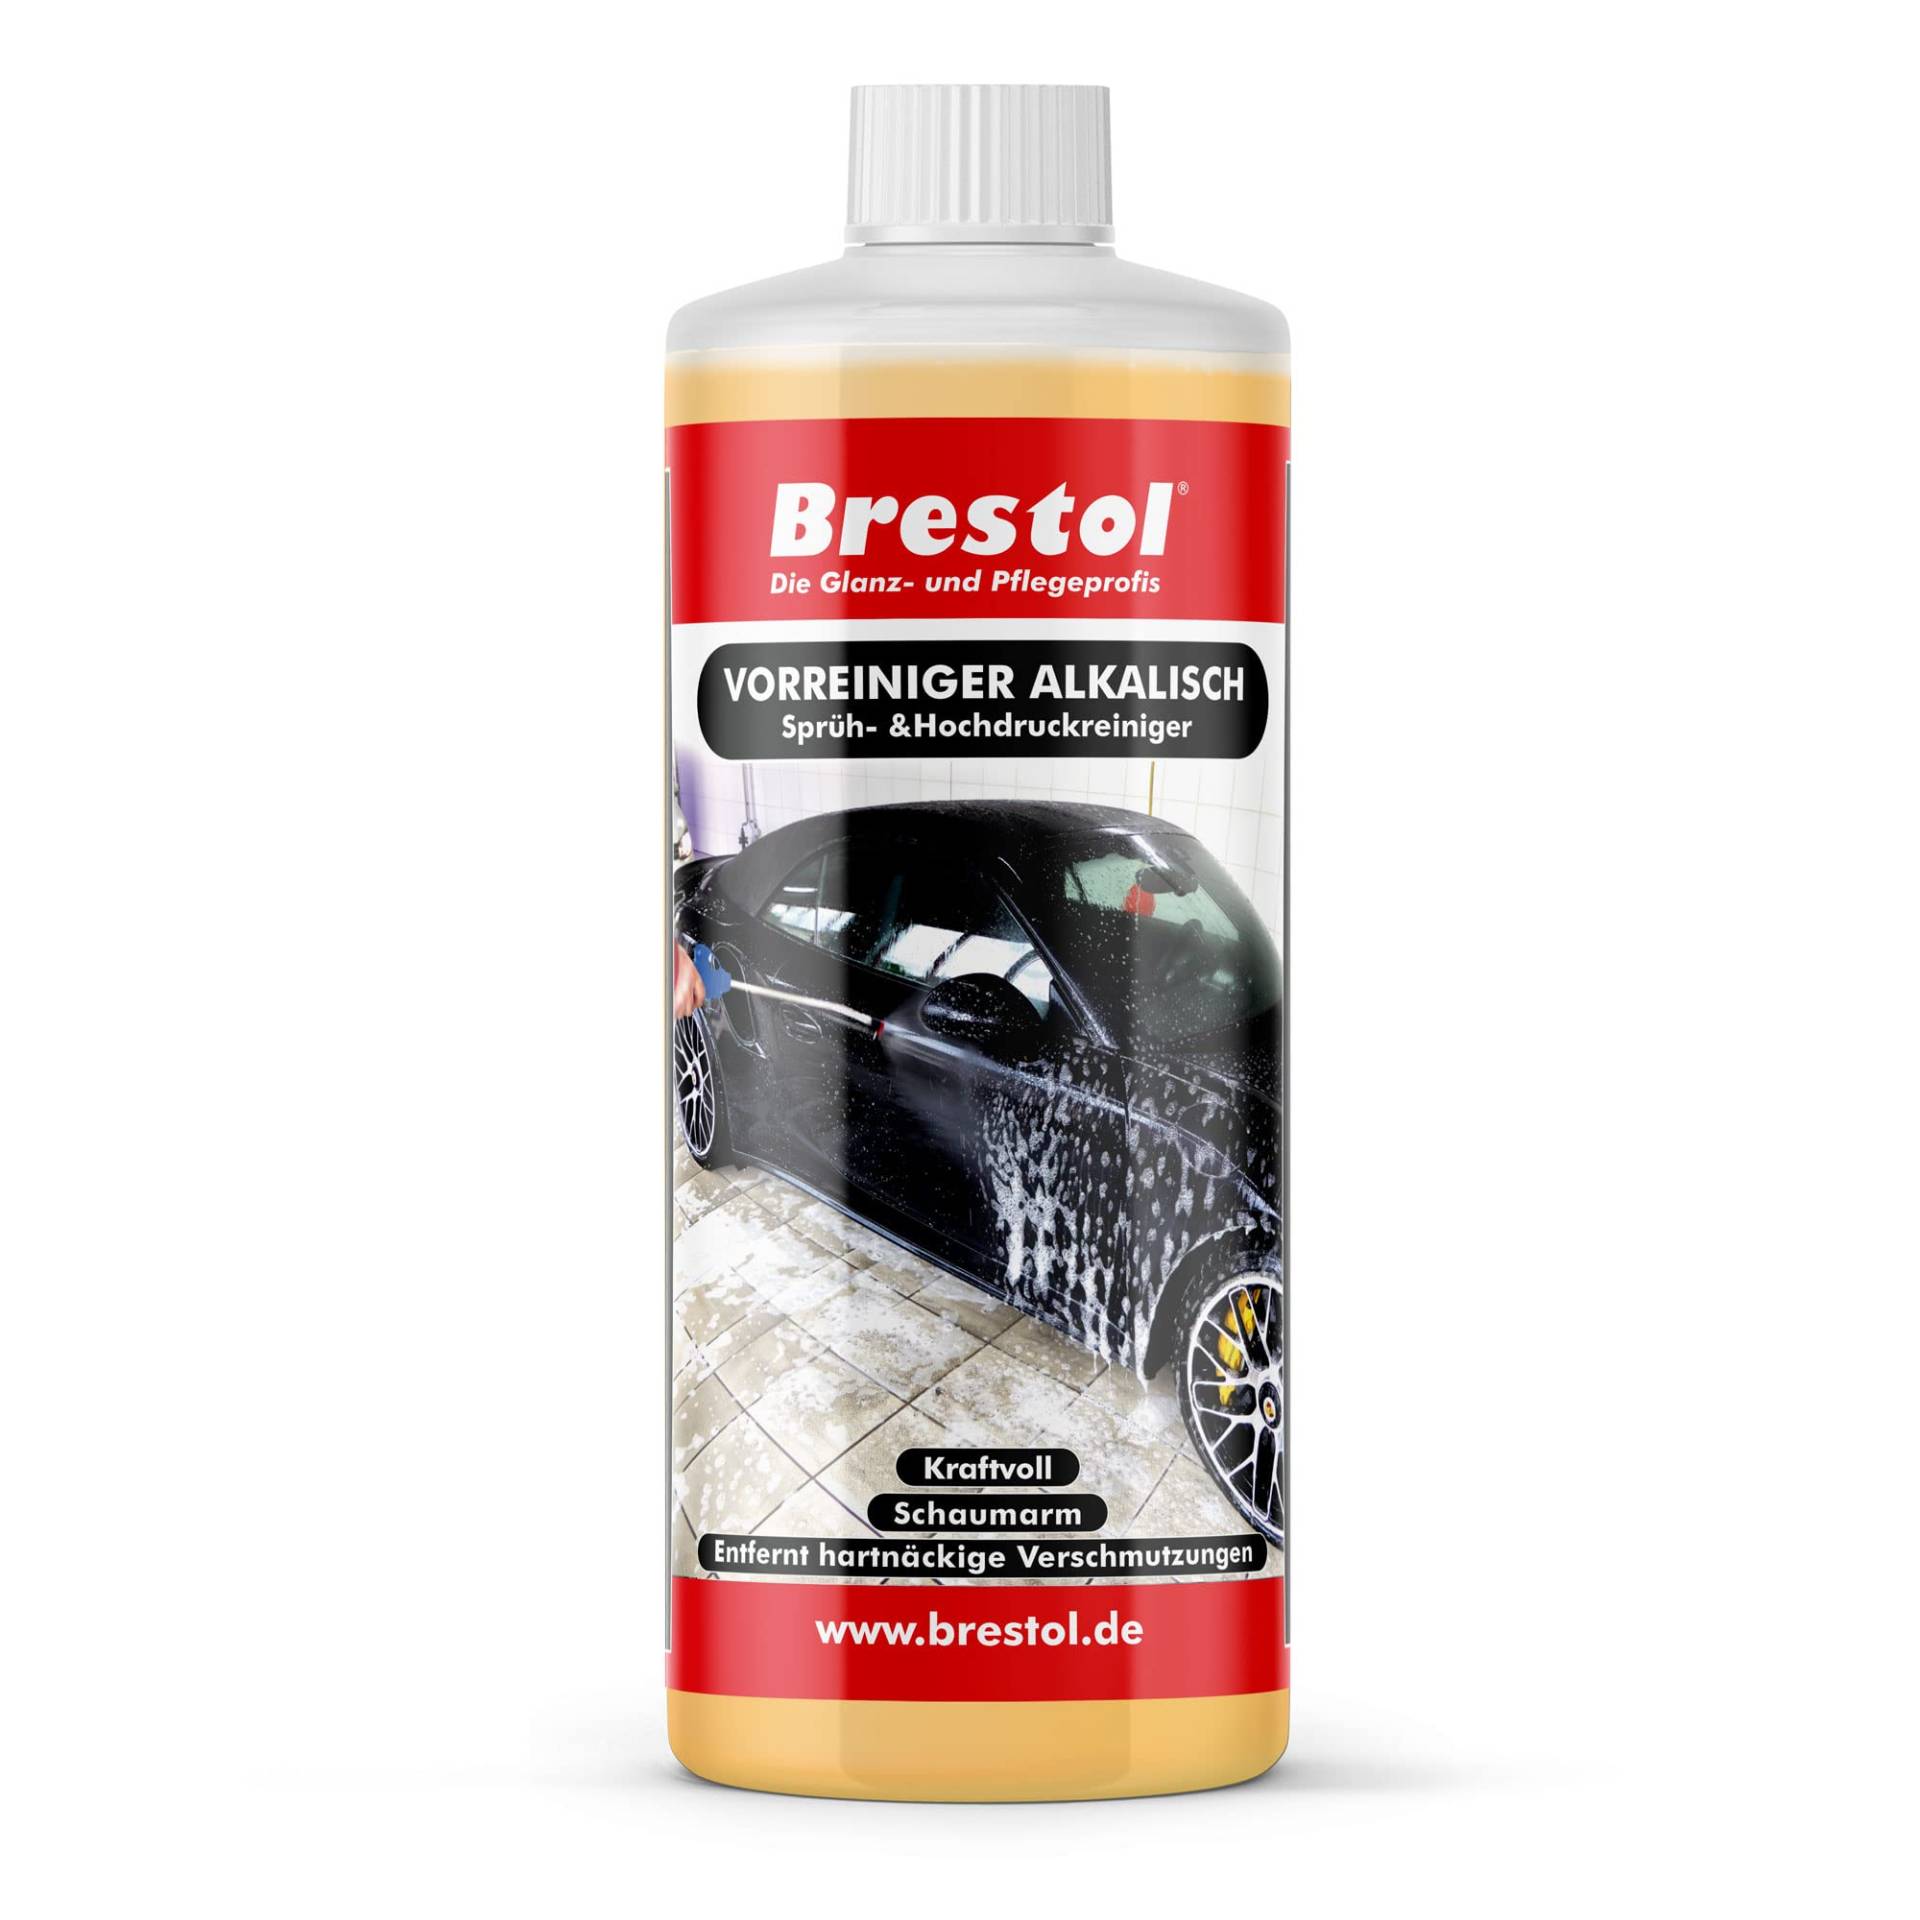 Brestol Autoshampoo Power 1000 ml Konzentrat - für Hochdruckgeräte & zur Autovorwäsche in Auto-Waschanlagen & Waschstrassen von Brestol